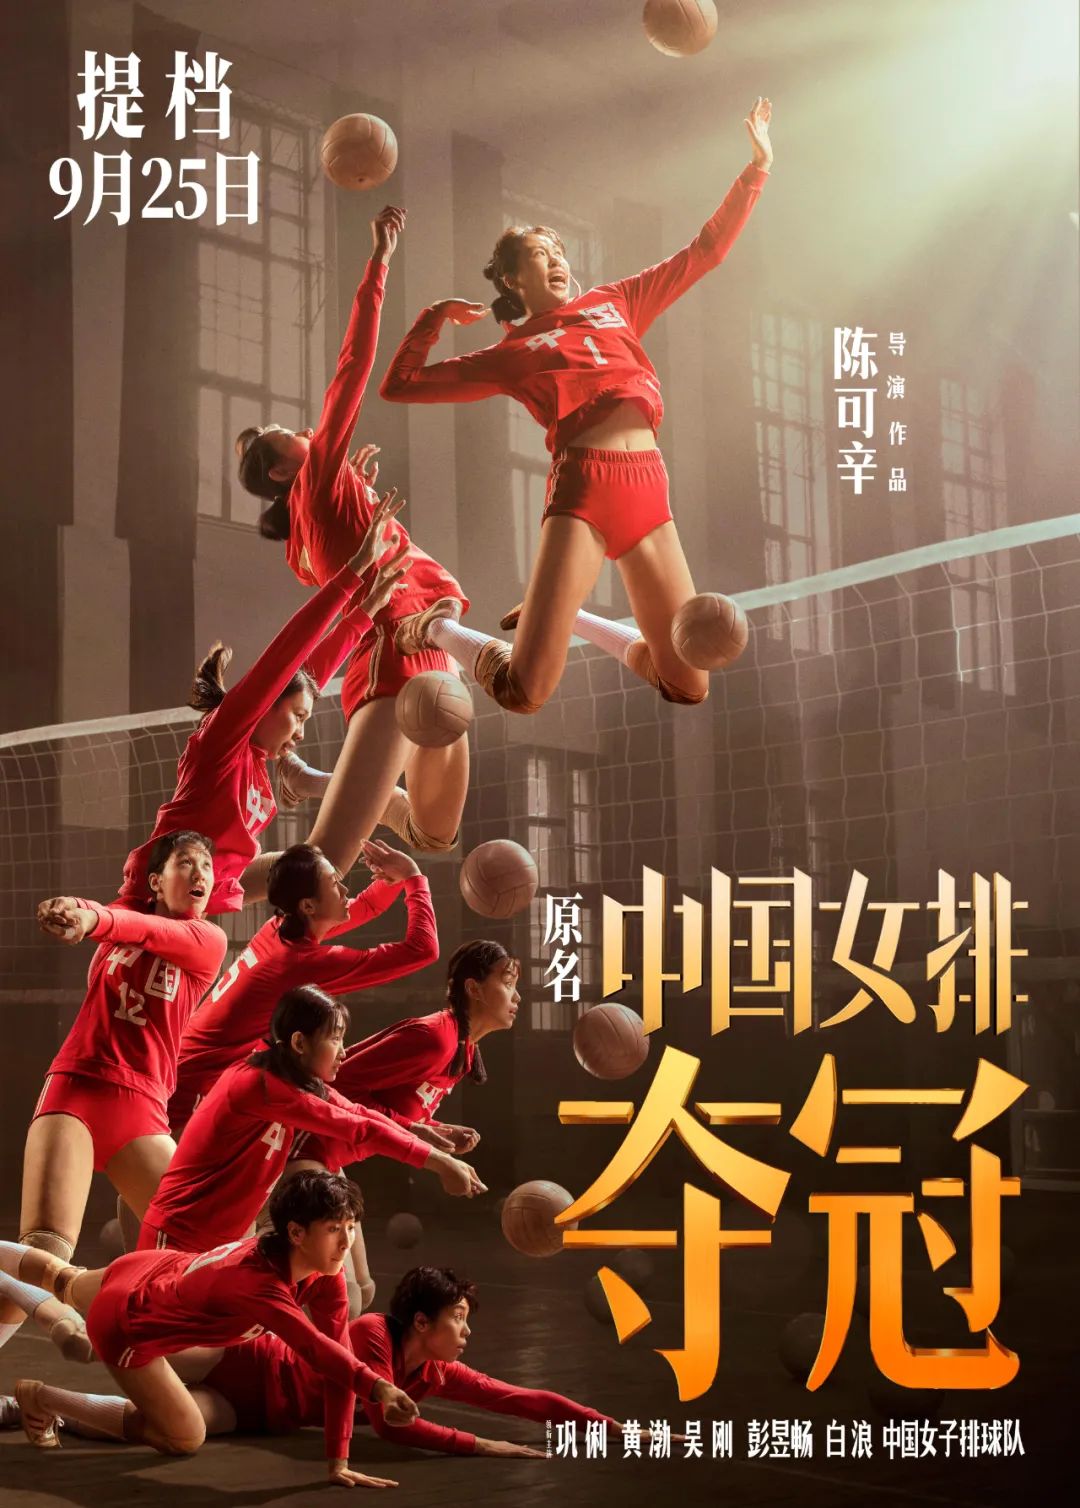 中国vs塞尔维亚女排_2014年8月16号 女排中国 塞尔维亚 结果_中国女排对塞尔维亚比赛结果